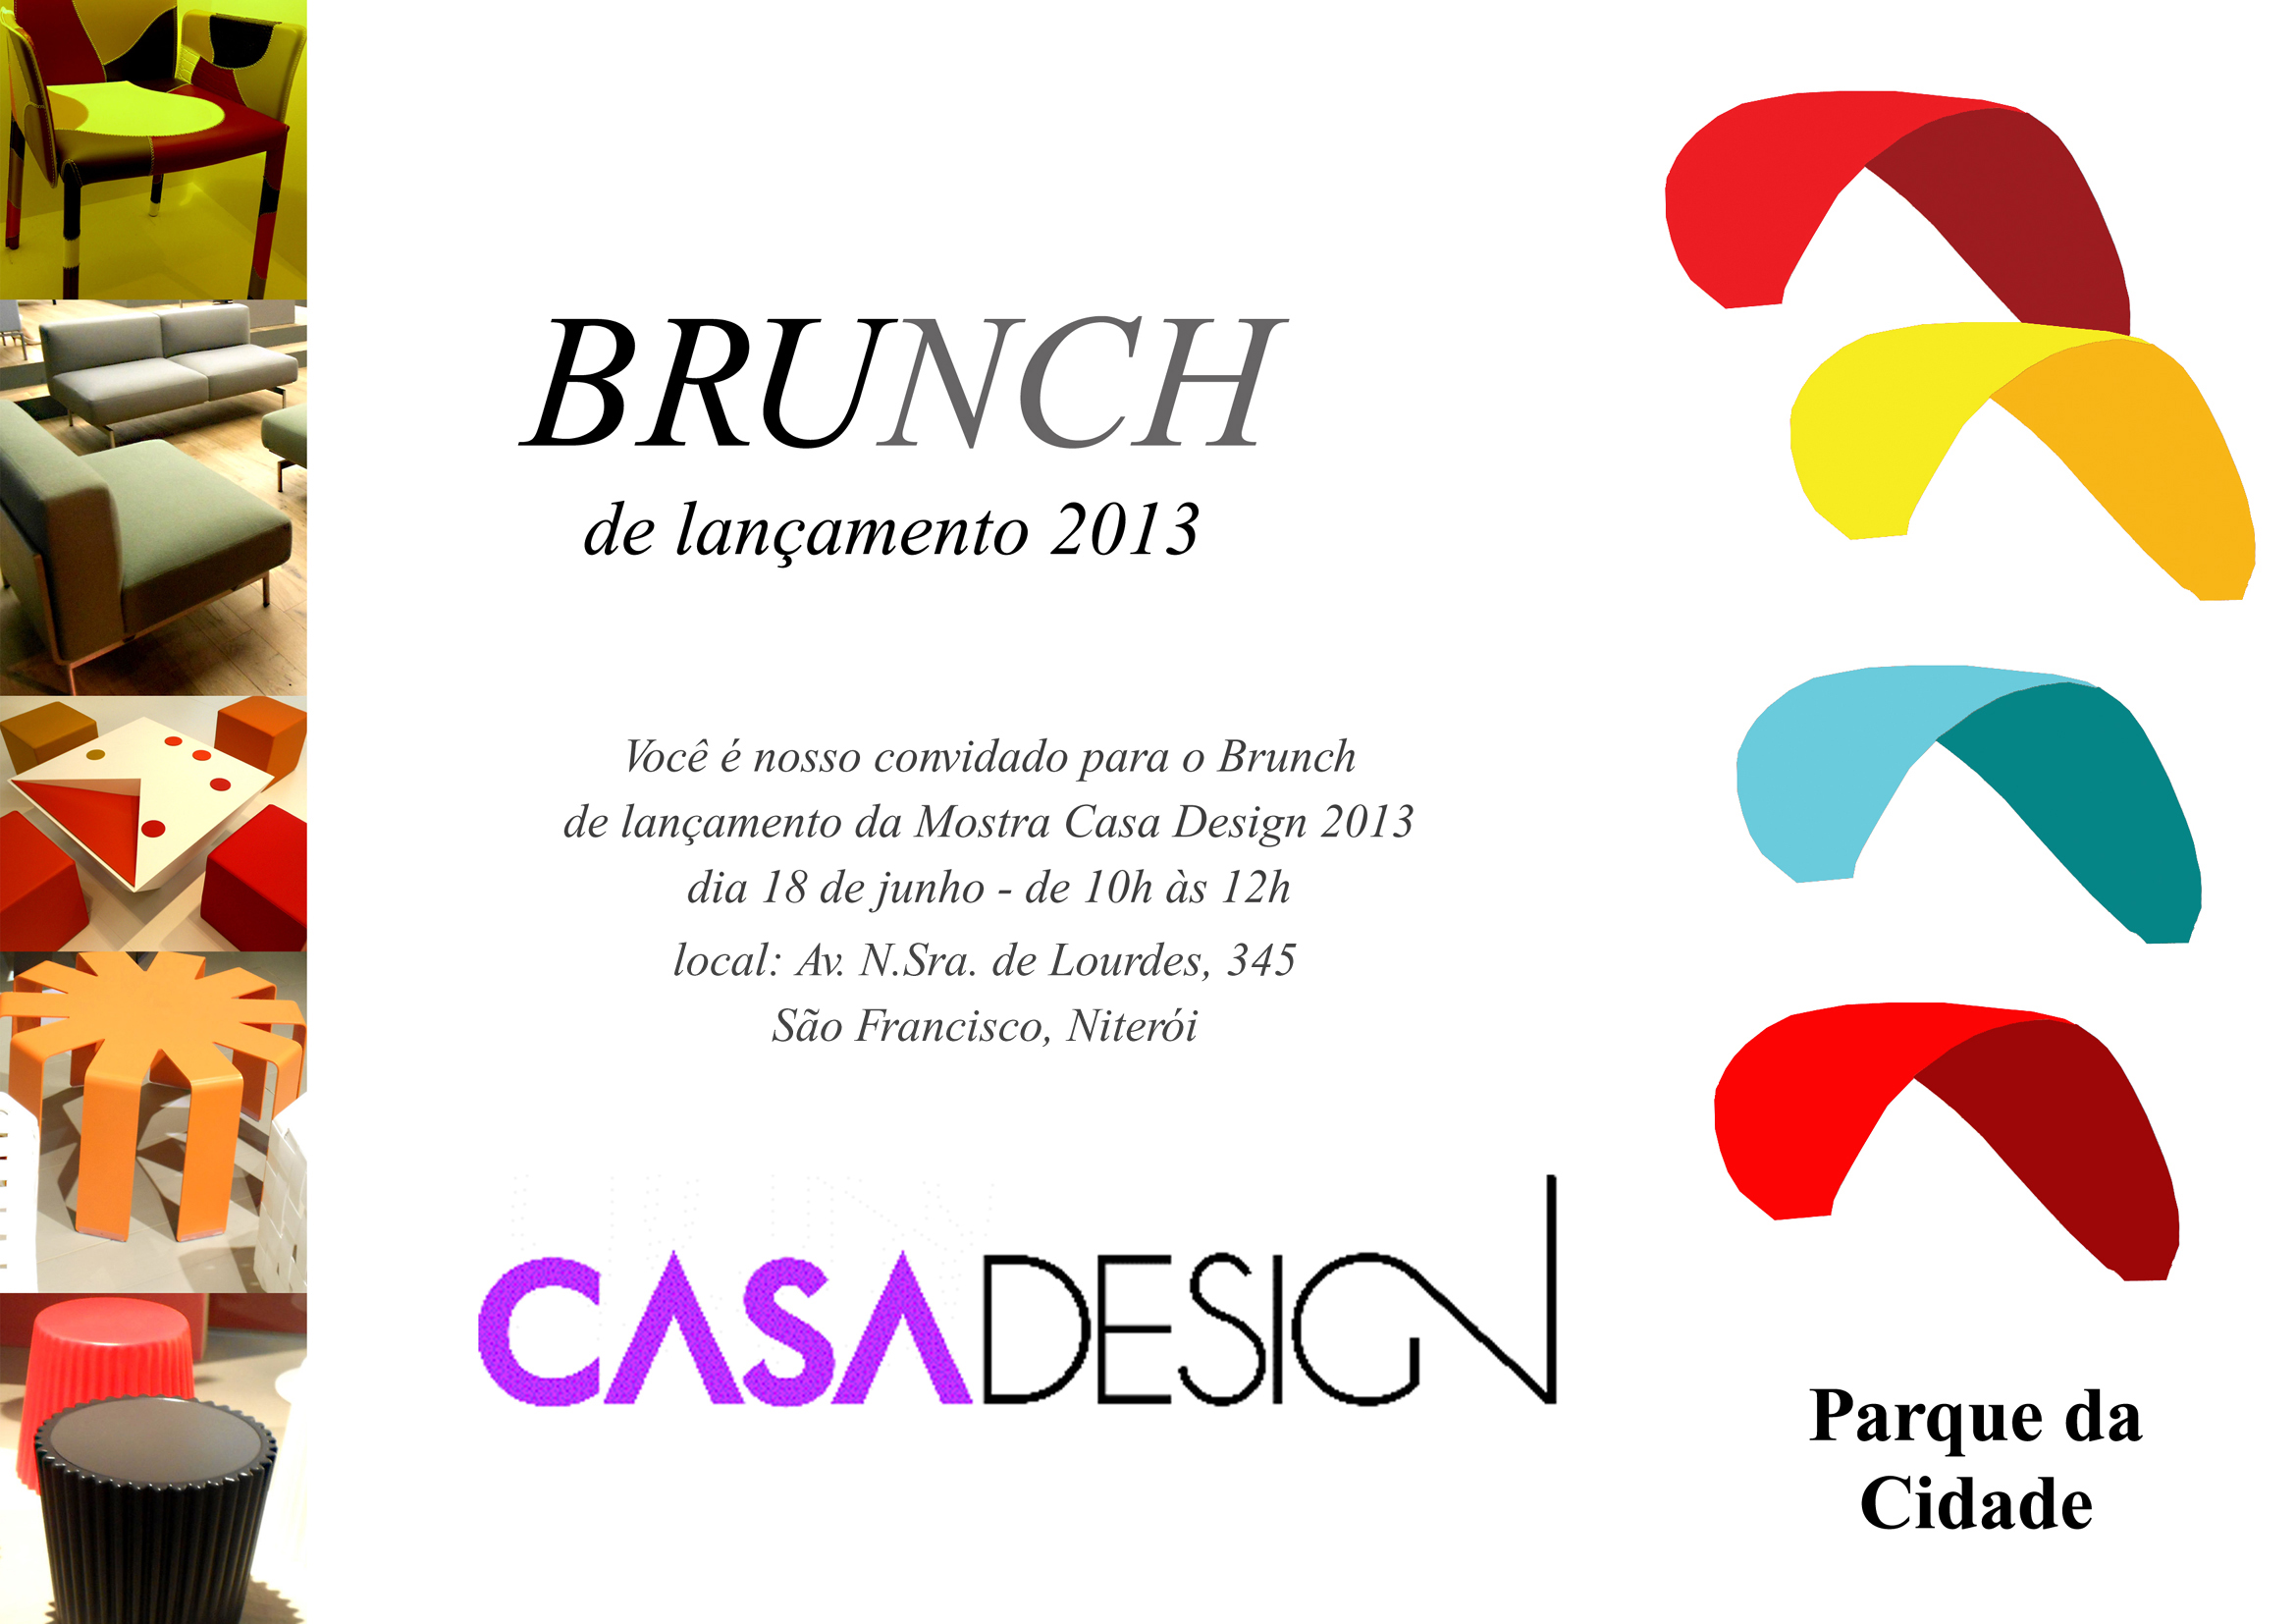 Casa Design 2013 faz brunch de imprensa